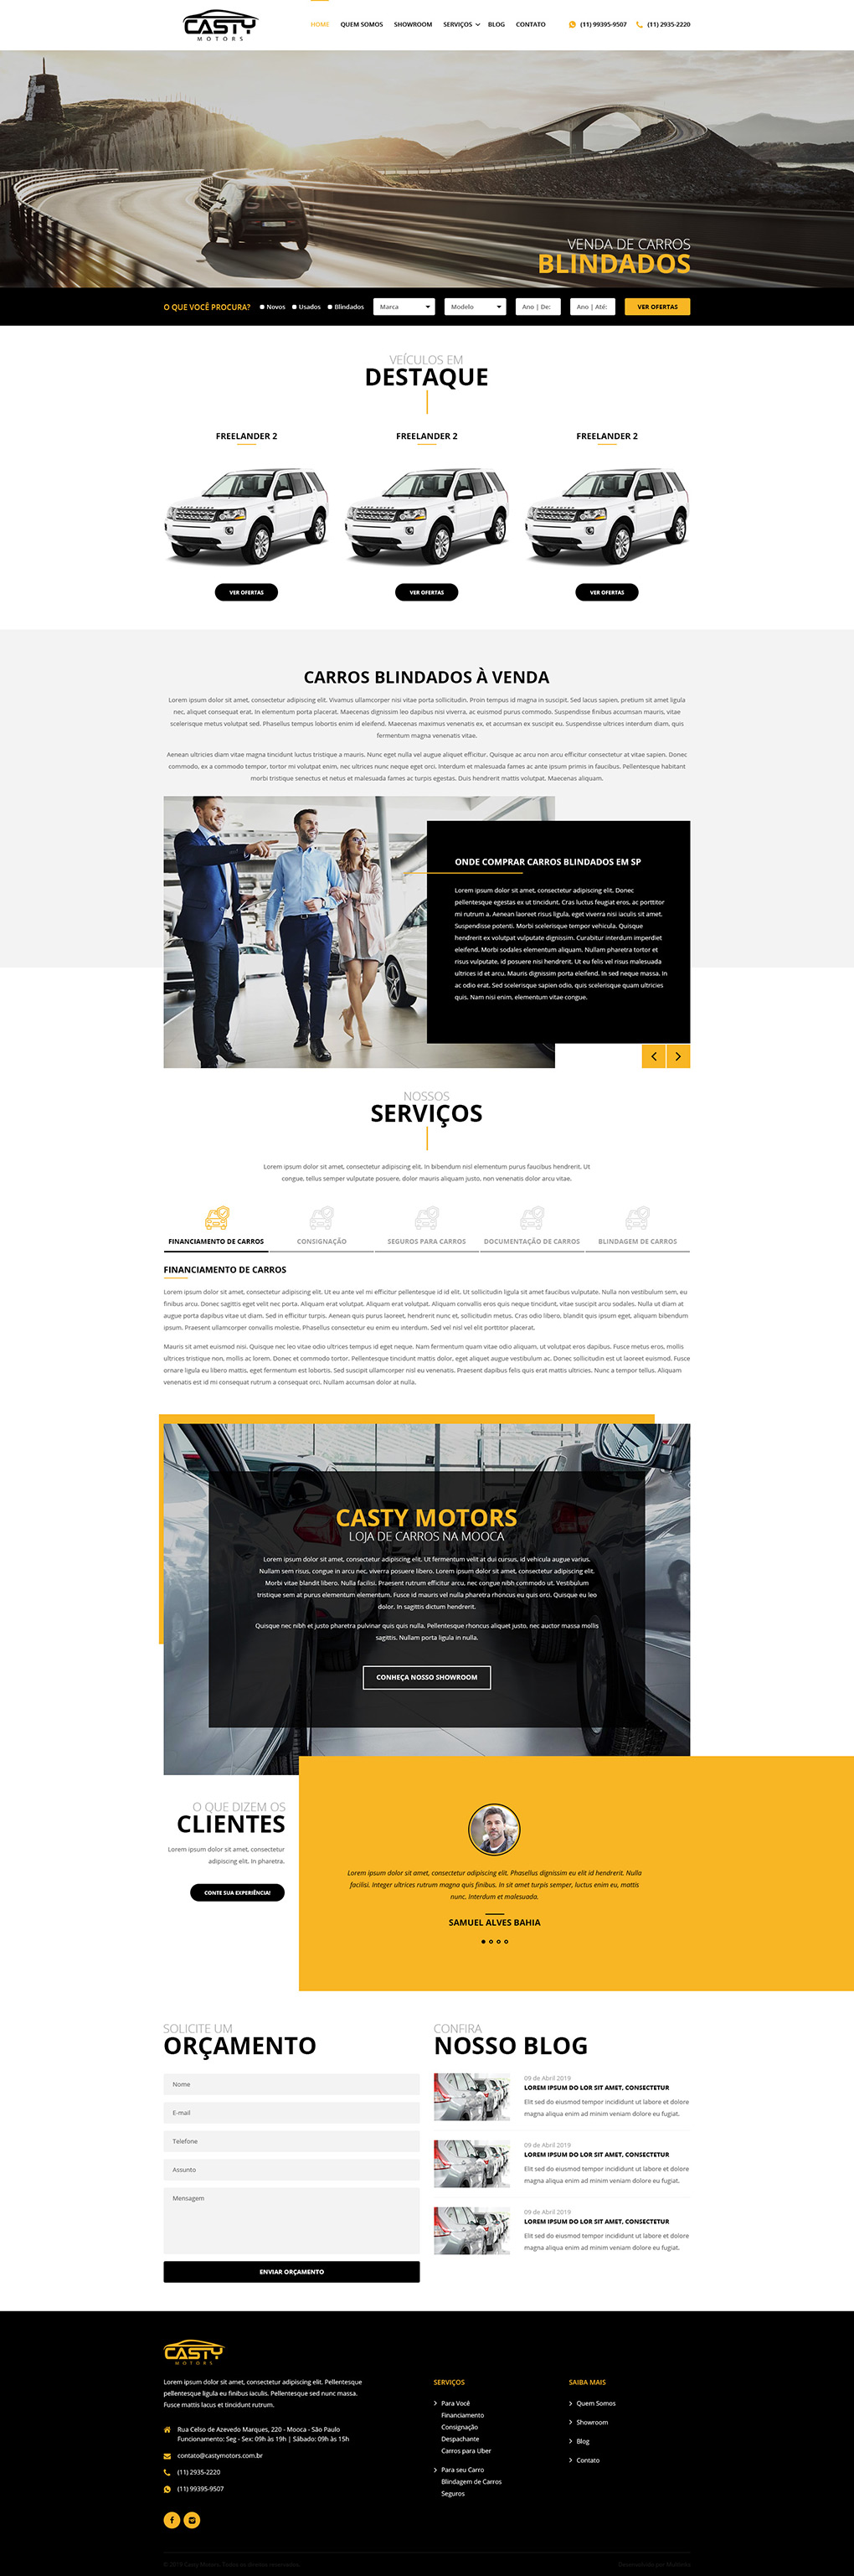 Criação de Site Casty Motors